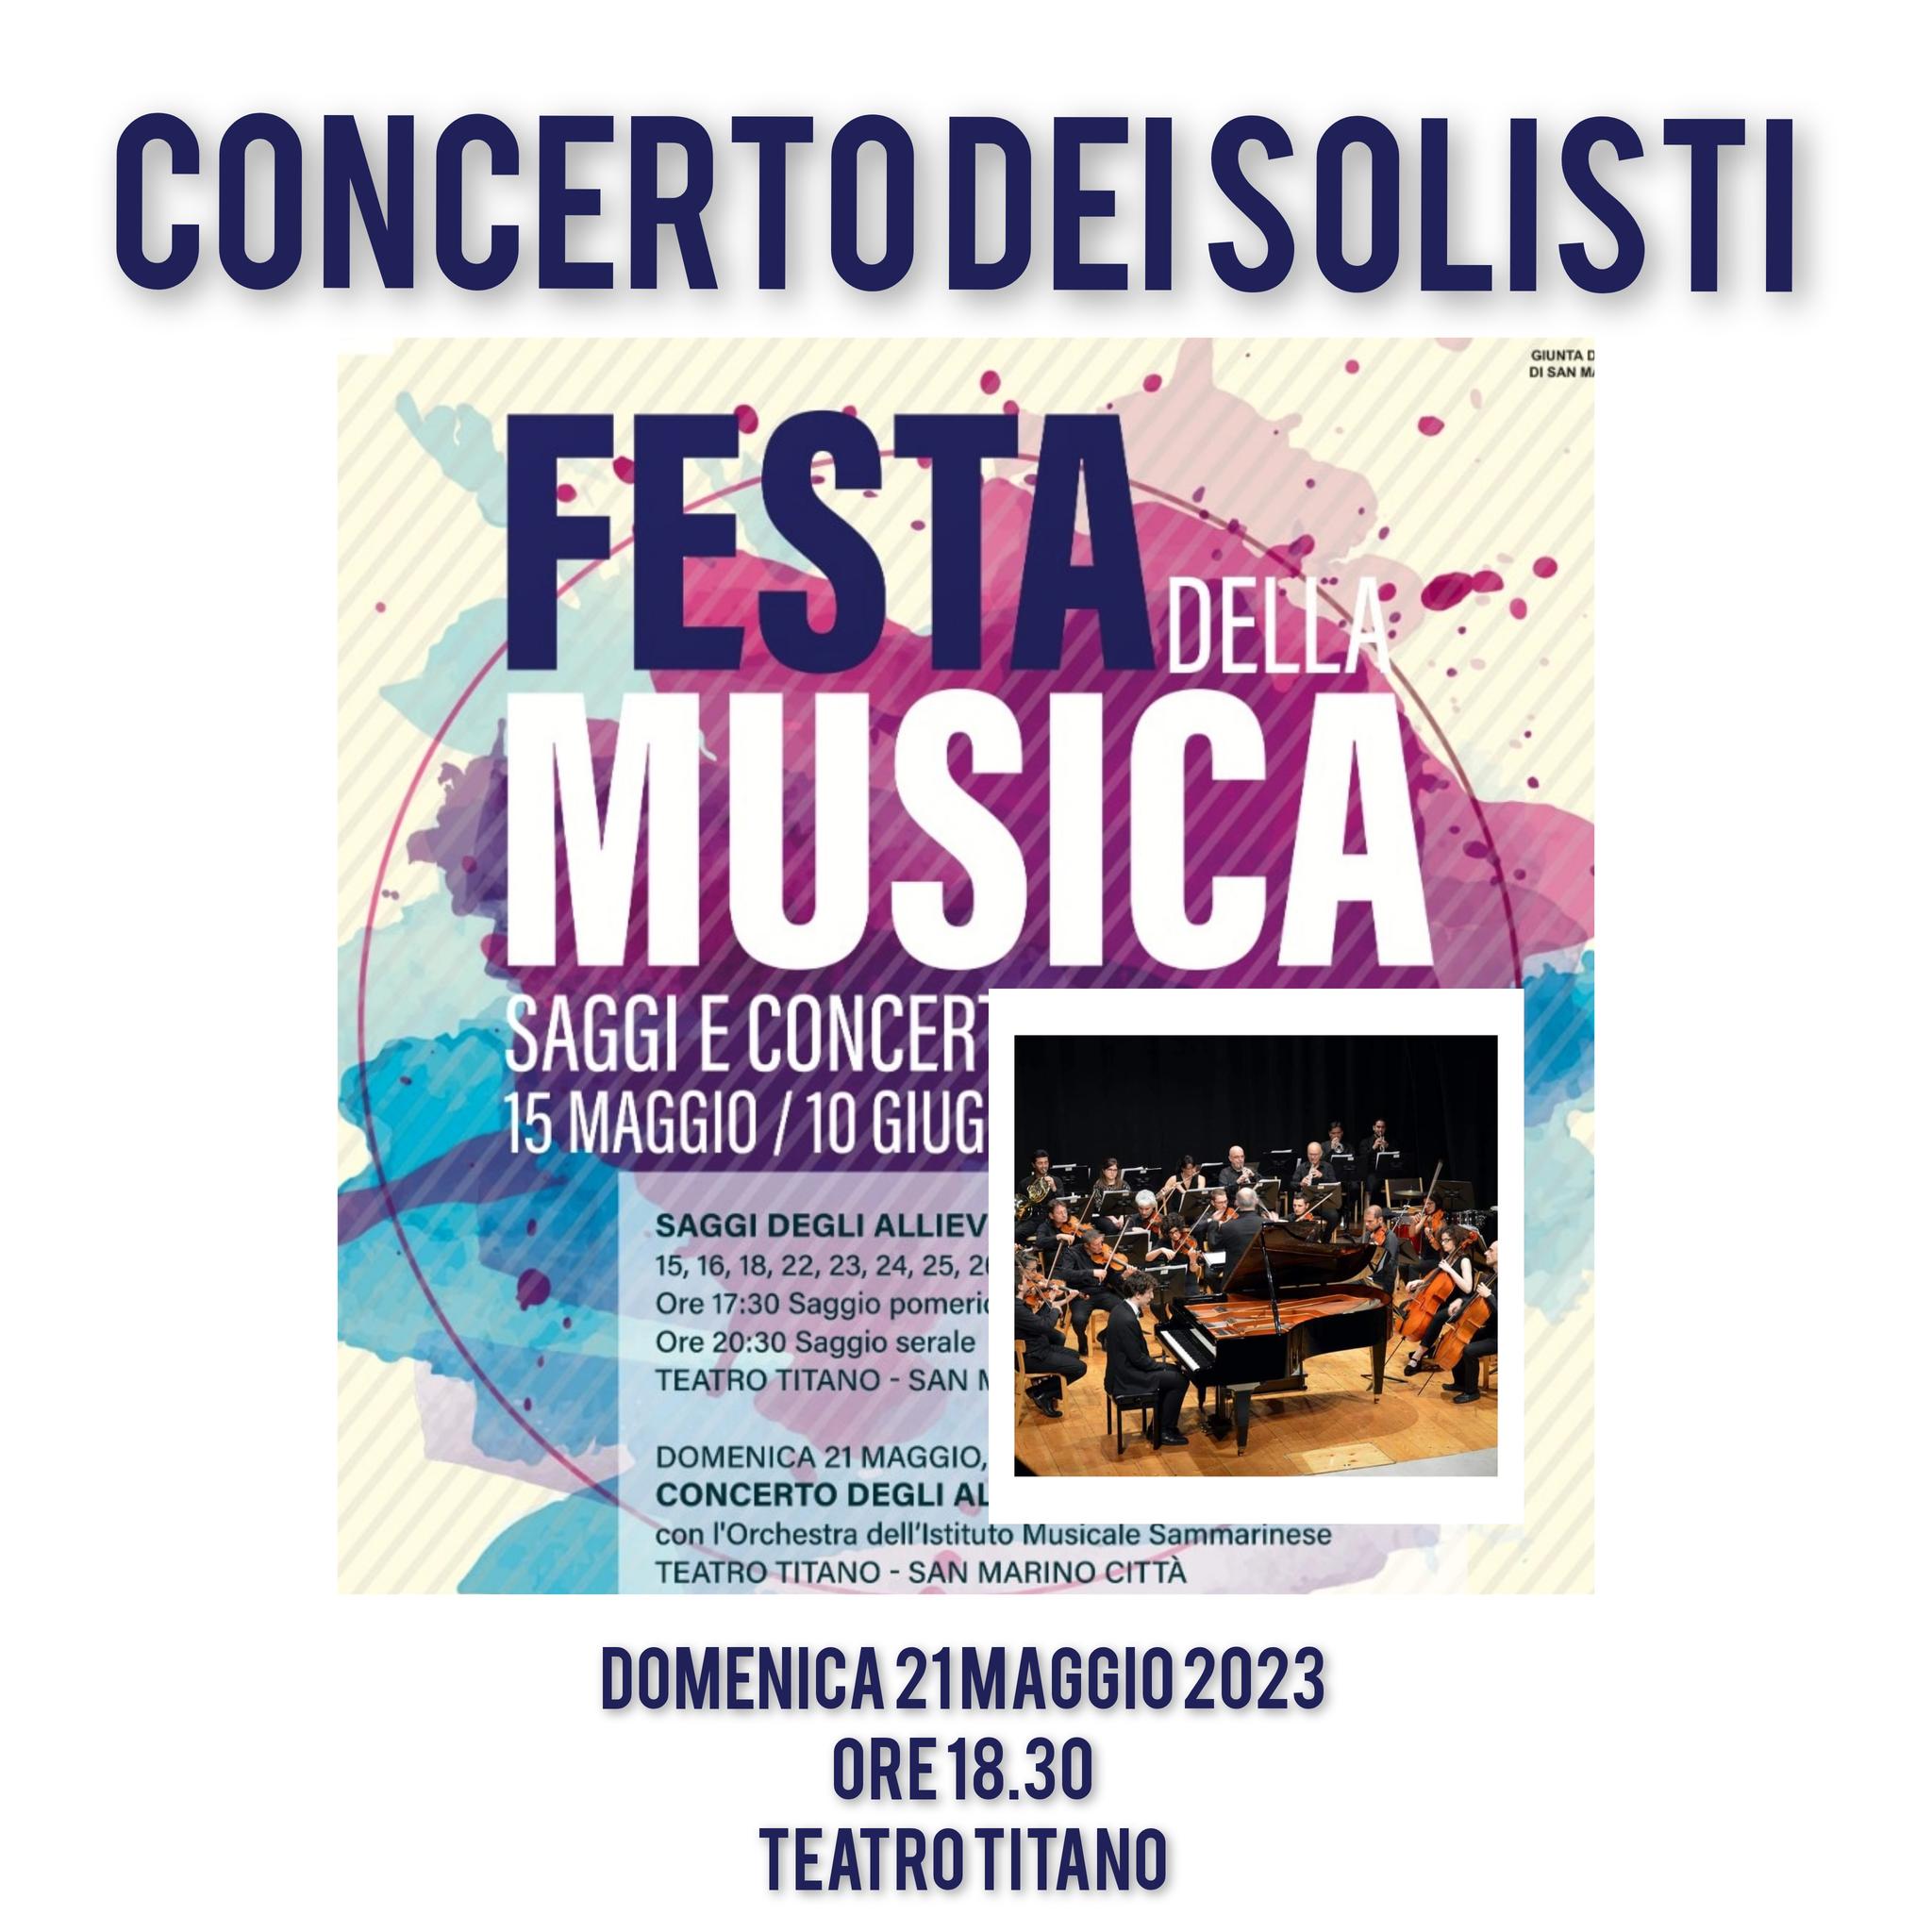 San Marino. Questa sera il concerto dei solisti dell’Istituto musicale sammarinese raccoglierà fondi da destinare all’Emilia Romagna